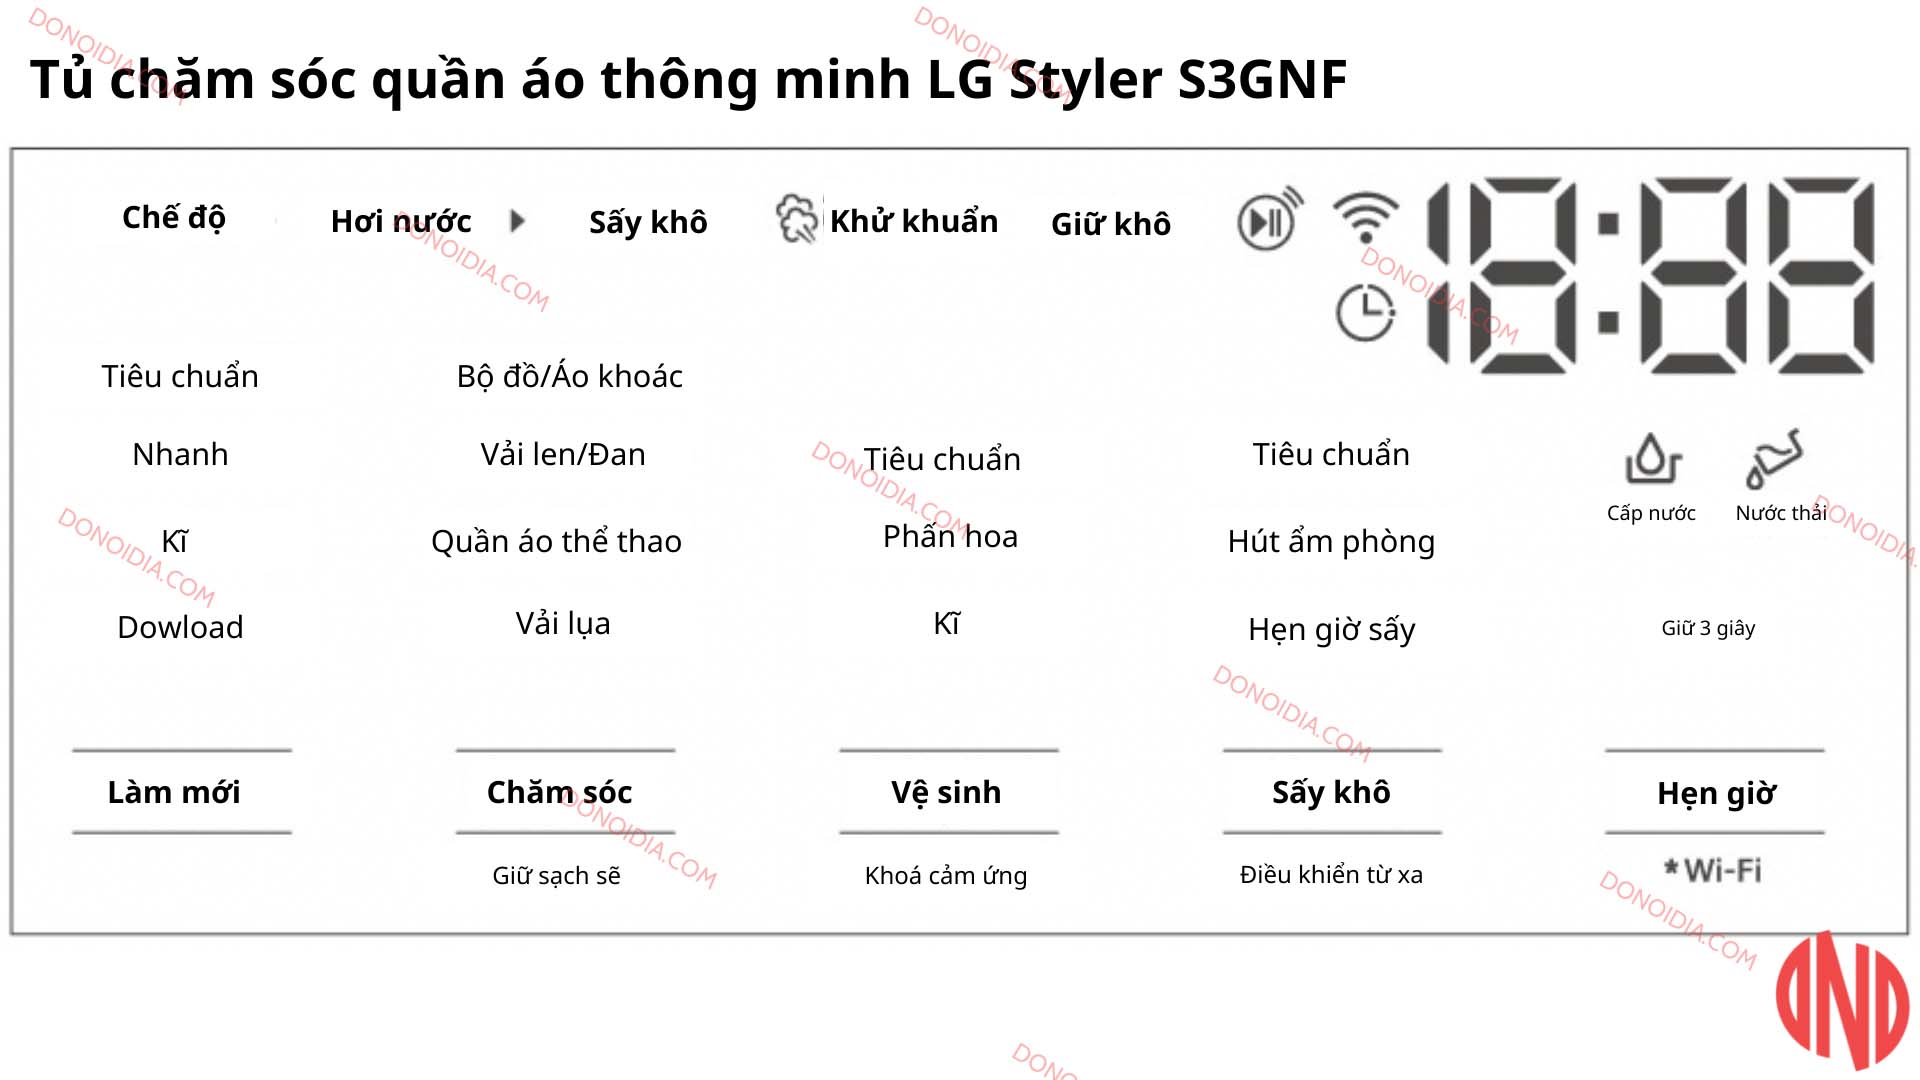 Hướng dẫn sử dụng tủ chăm sóc quần áo thông minh LG Styler S3GNF